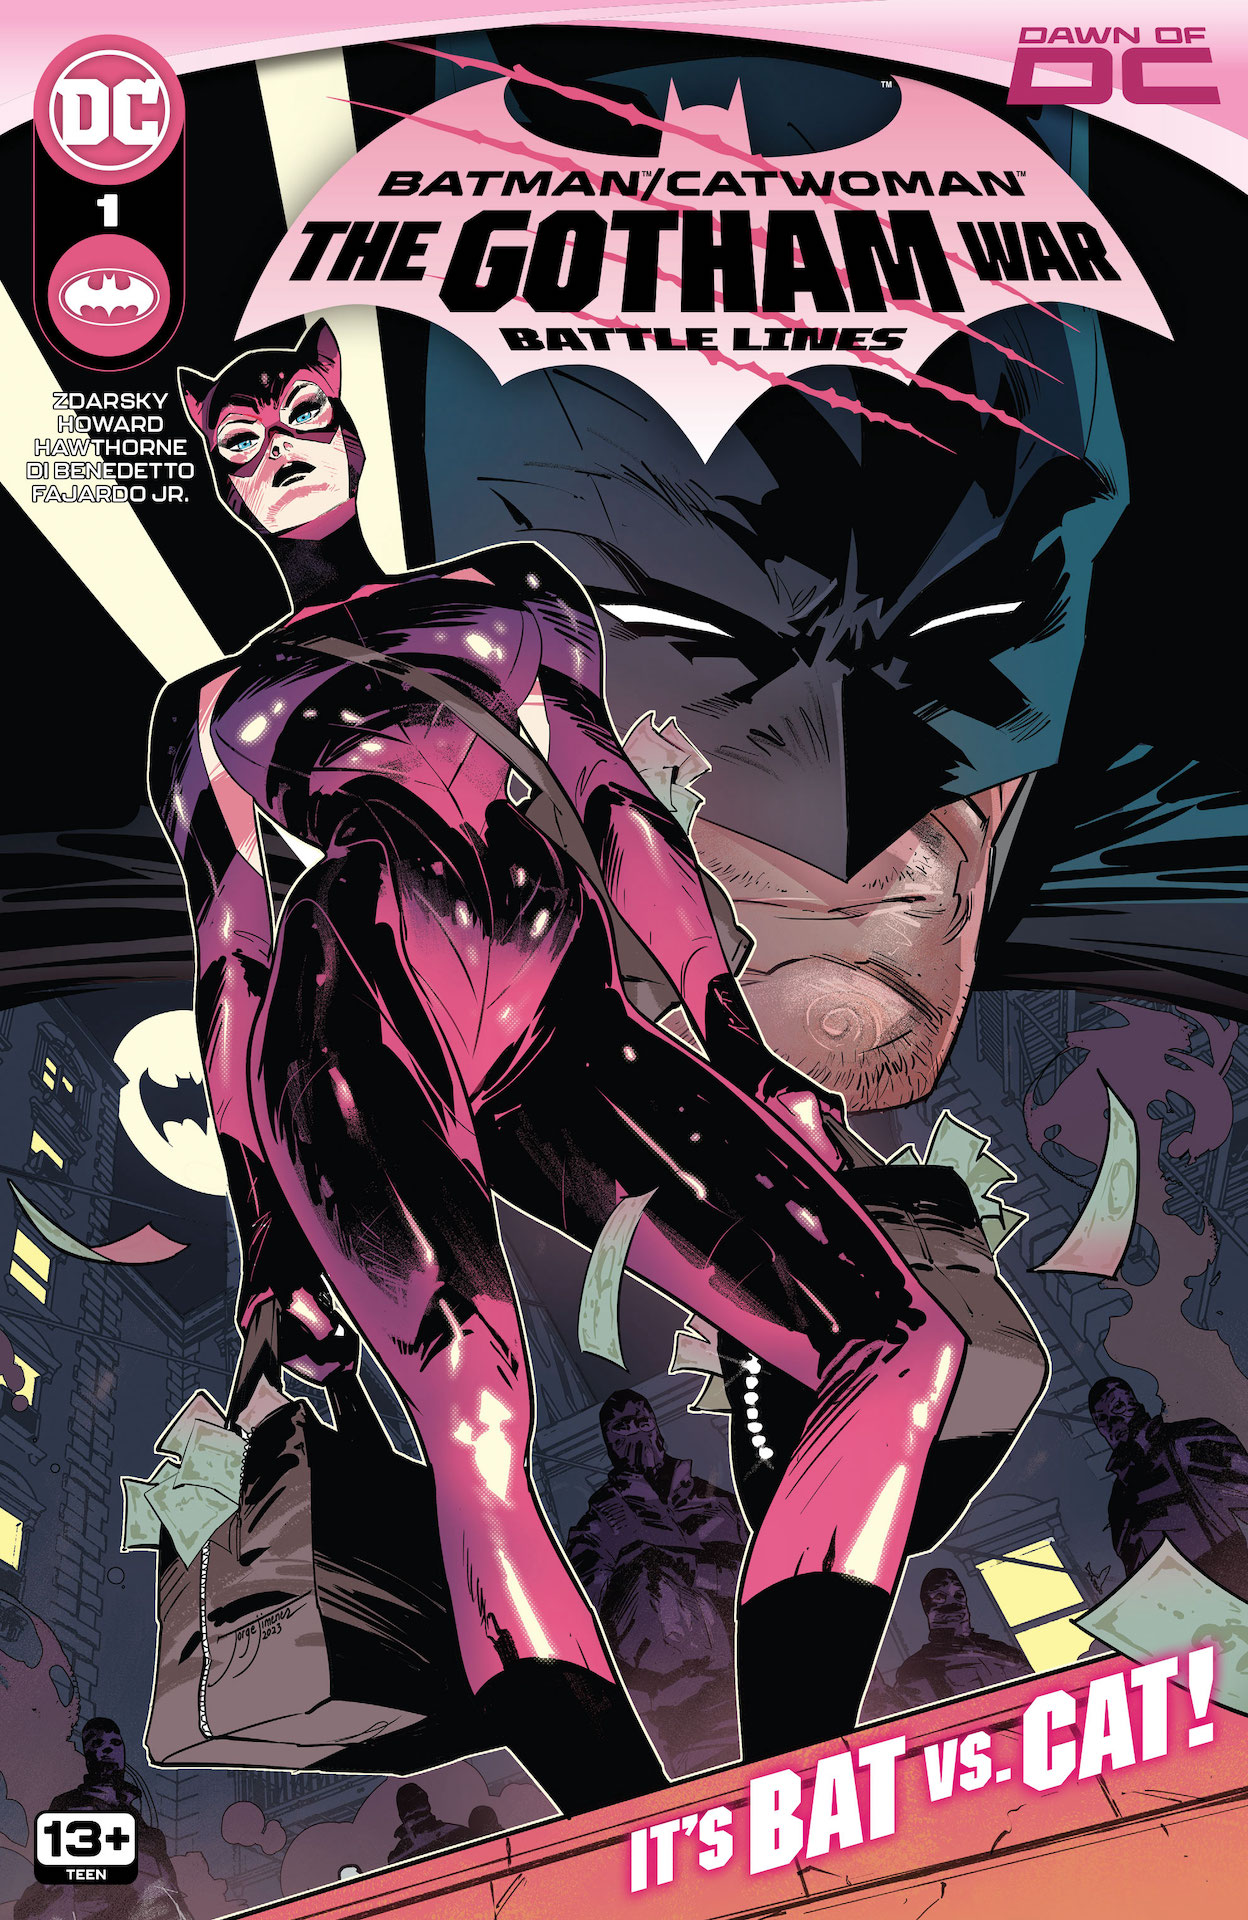 DC Preview: Batman / Catwoman: The Gotham War - Battle Lines #1